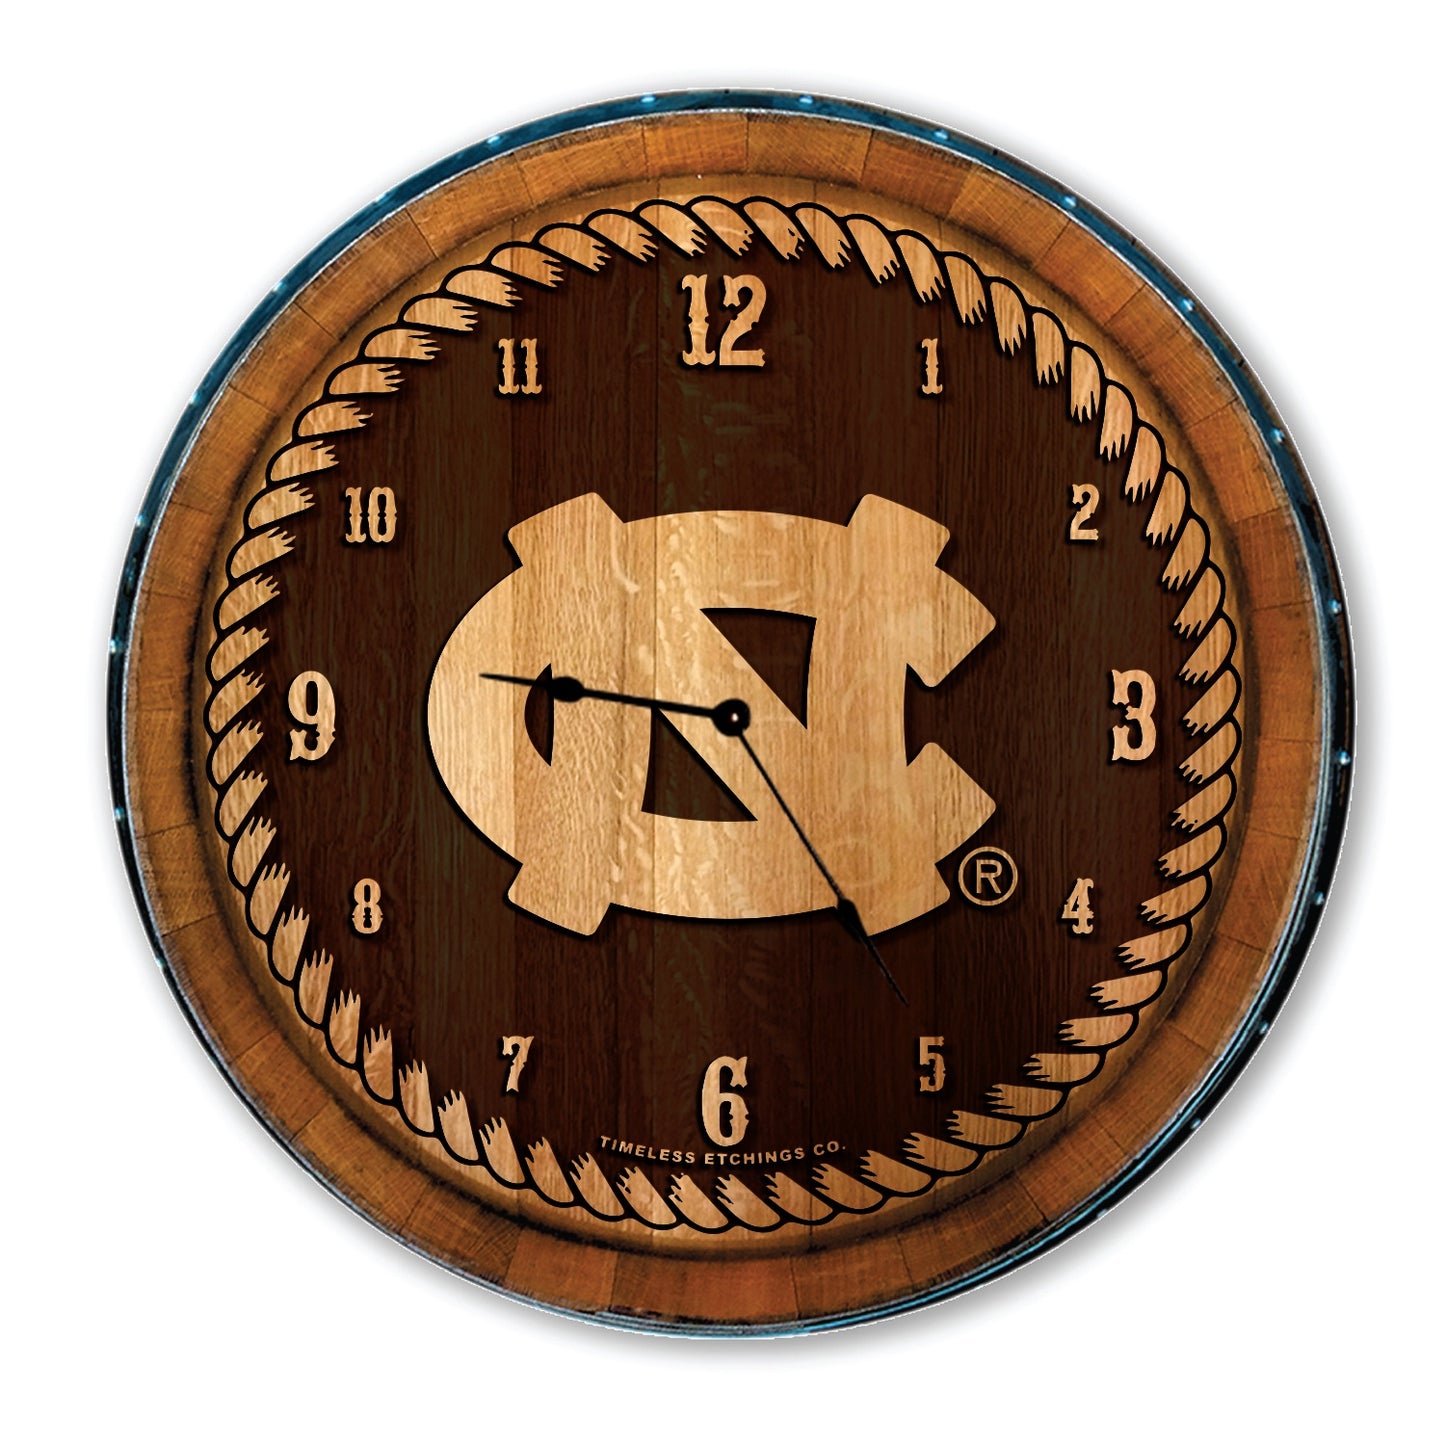 North Carolina Tar Heels Wooden Clock Made from Barrel Head